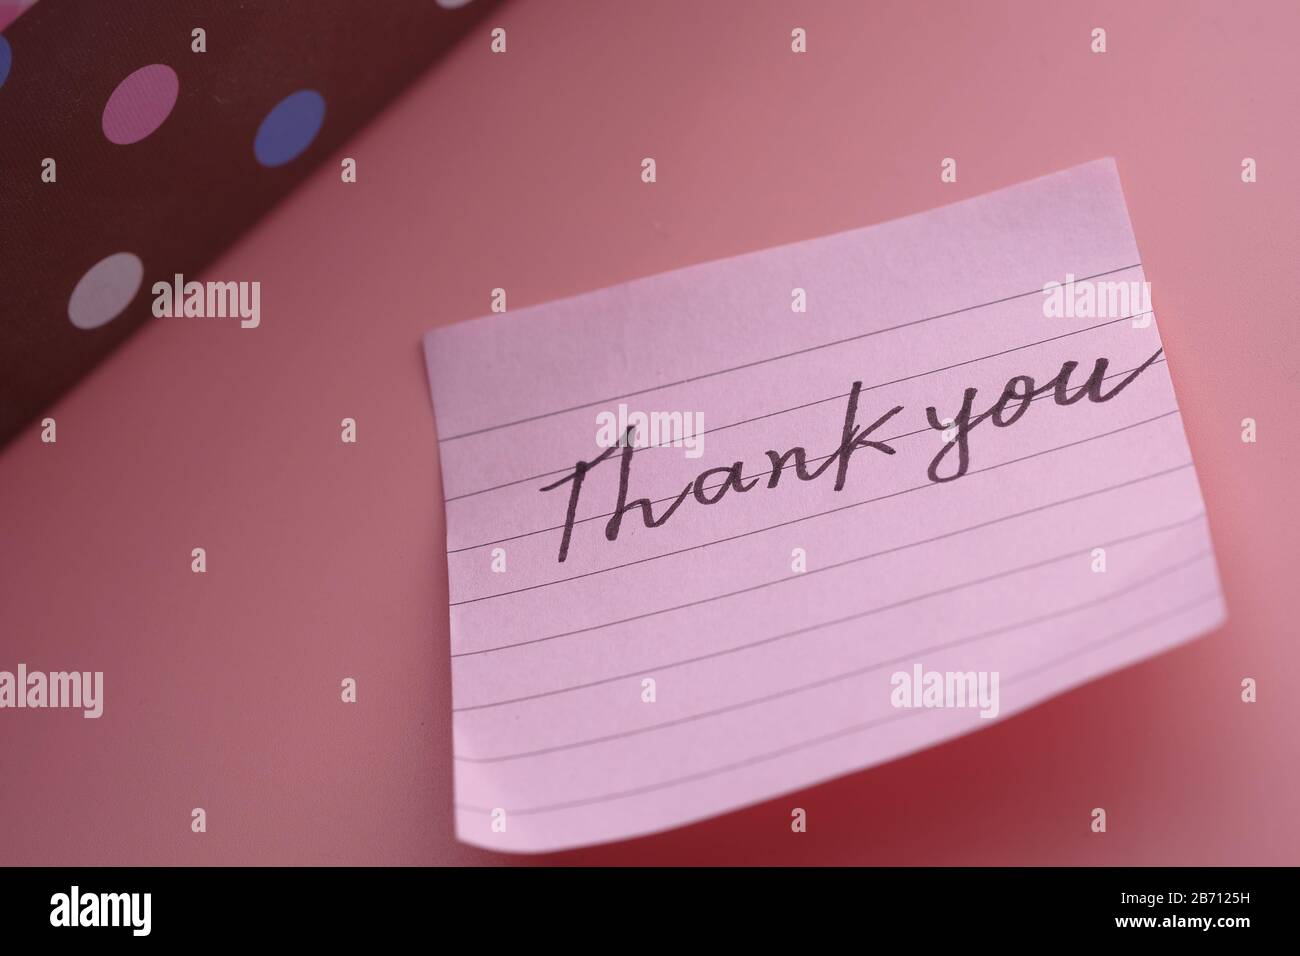 Dankesnachricht mit Geschenkbox auf pinkfarbenem Hintergrund Stockfoto